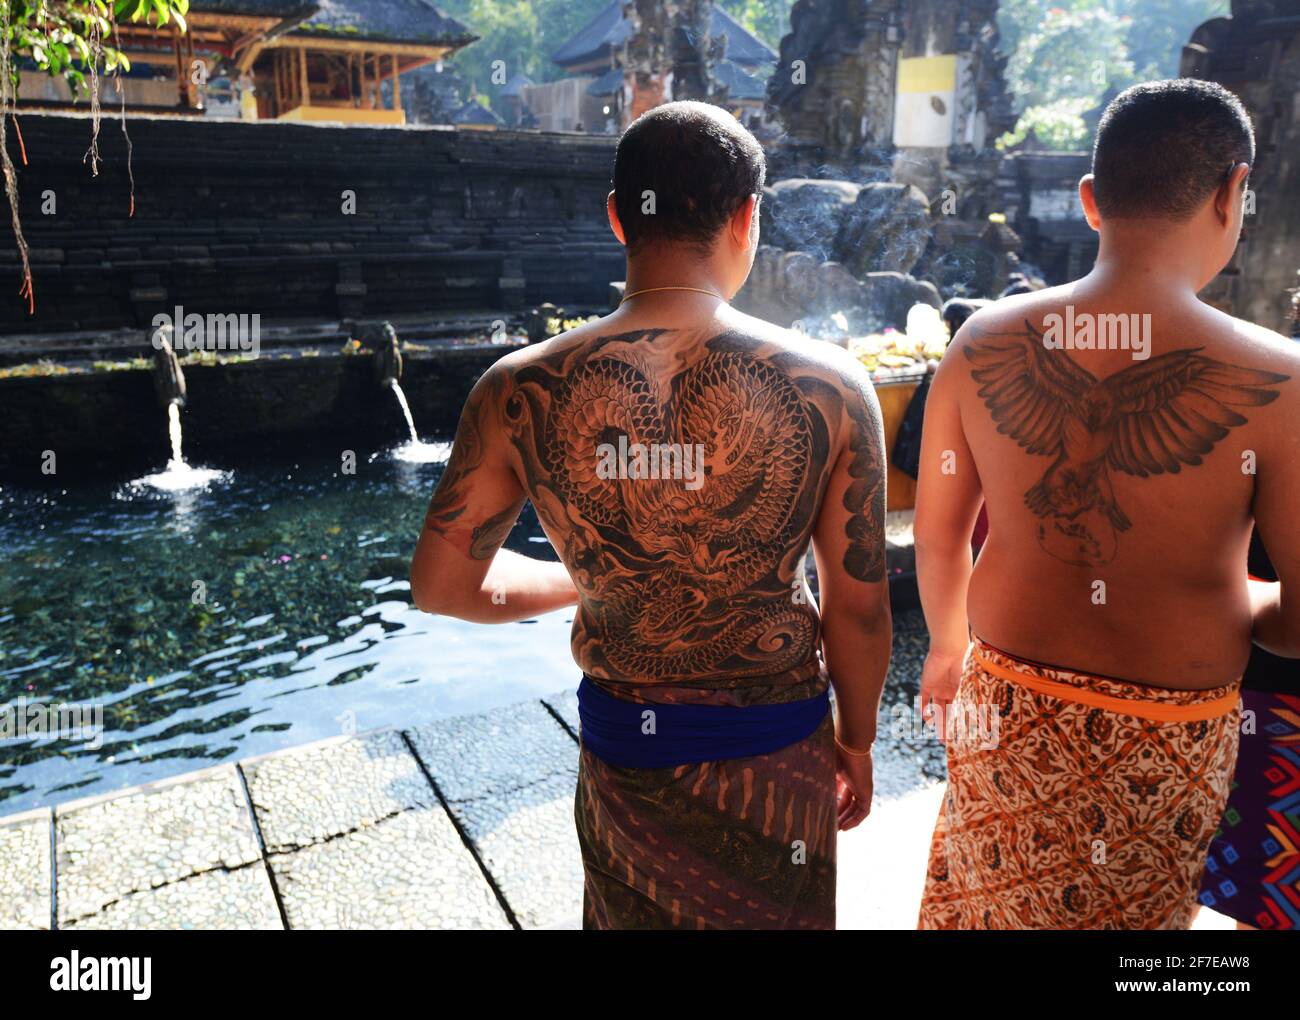 Tätowierte balinesische Männer, die bereit sind, den reinigenden Pool am Tirta Empul Tempel in Bali, Indonesien, zu betreten. Stockfoto